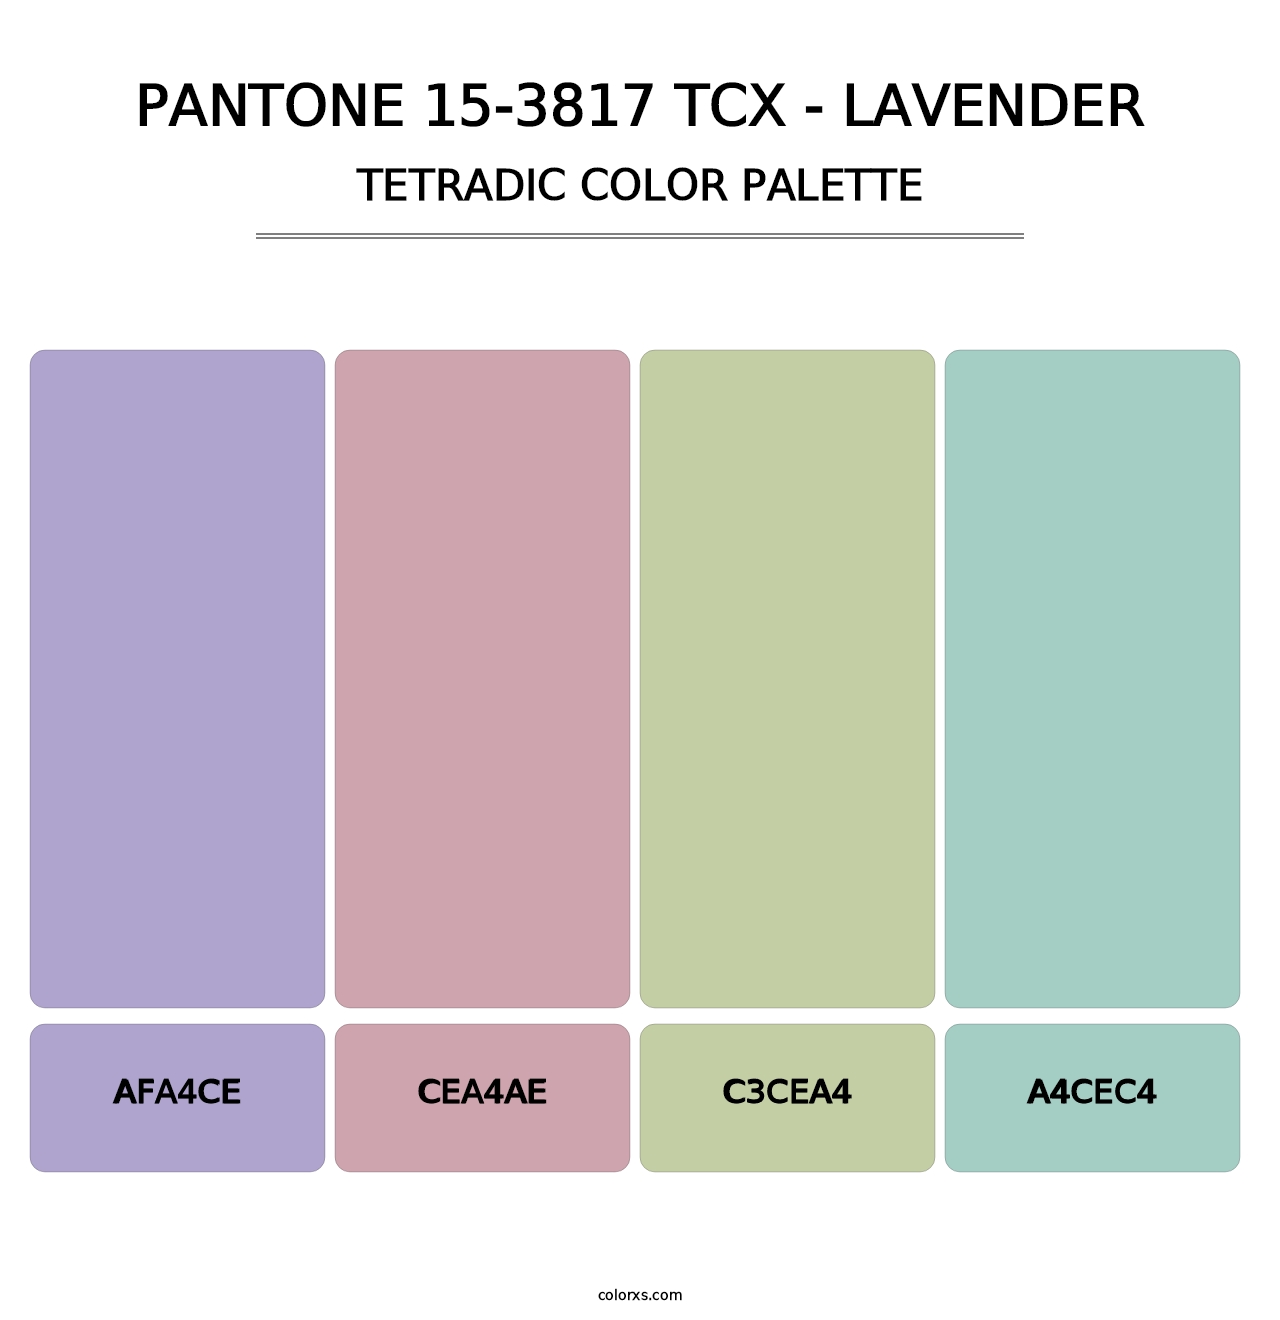 PANTONE 15-3817 TCX - Lavender - Tetradic Color Palette